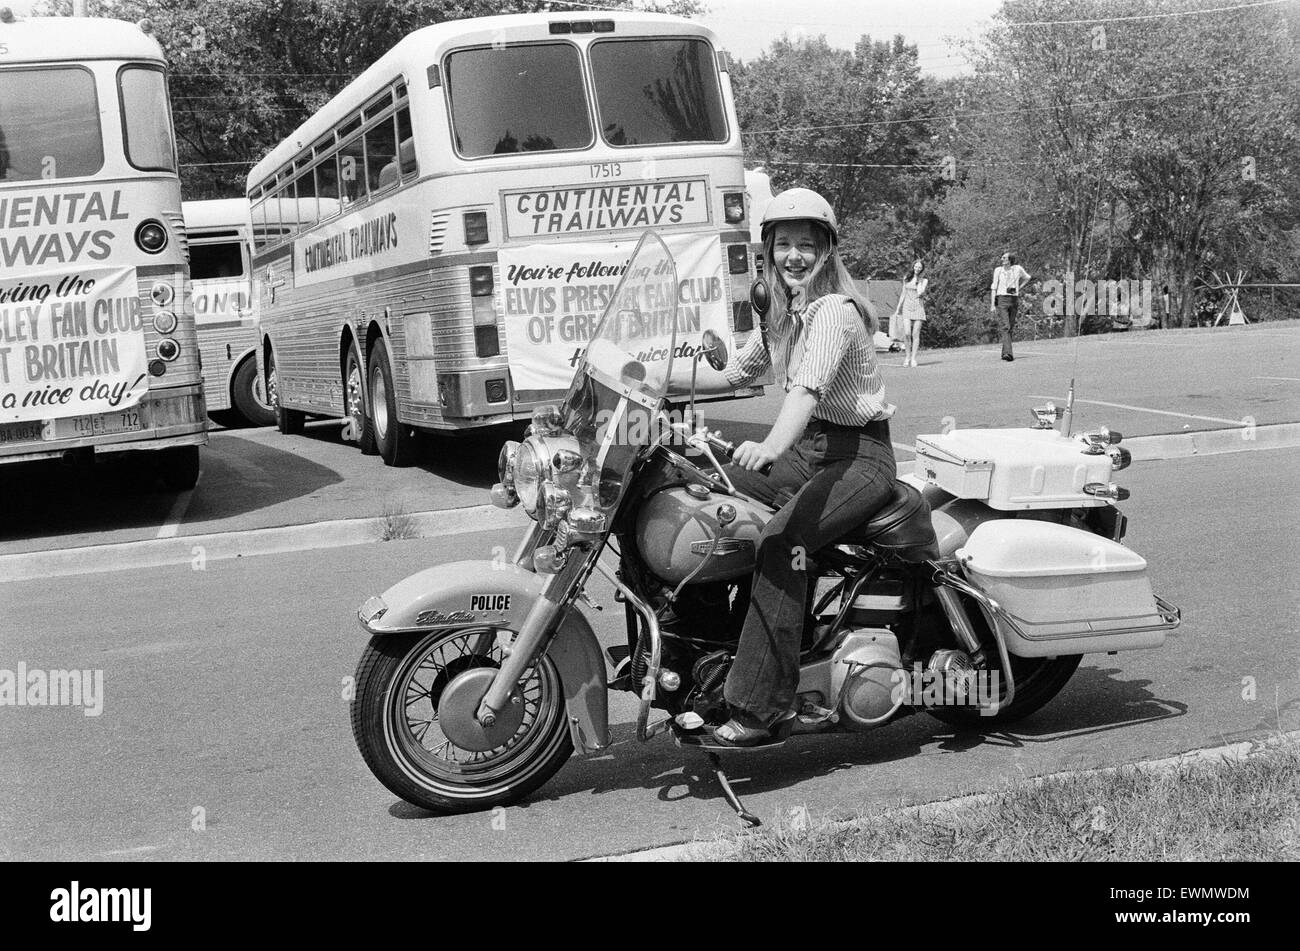 Tupelo est berceau de Elvis Presley. Membre du Fan Club d'Elvis Presley de Grande-Bretagne, fait l'essai d'une moto de police, des limites de la ville de Tupelo, Lee County, Mississippi, USA, 27 août 1973. Banque D'Images